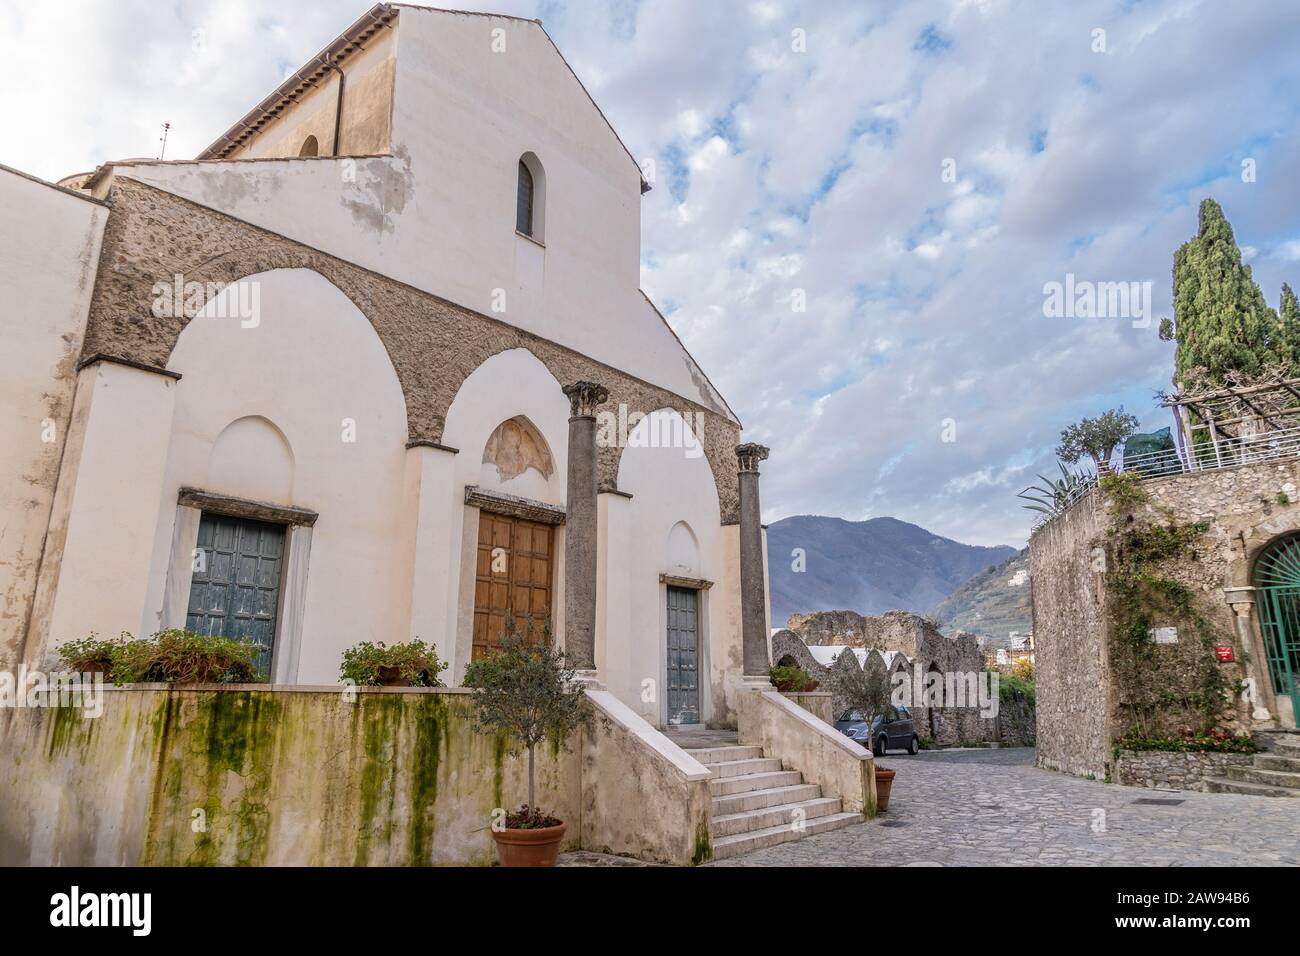 L'église de San Giovanni à Ravello, côte amalfitaine, Italie. L'église est l'endroit où la noblesse de Ravello médiéval a rencontré Banque D'Images